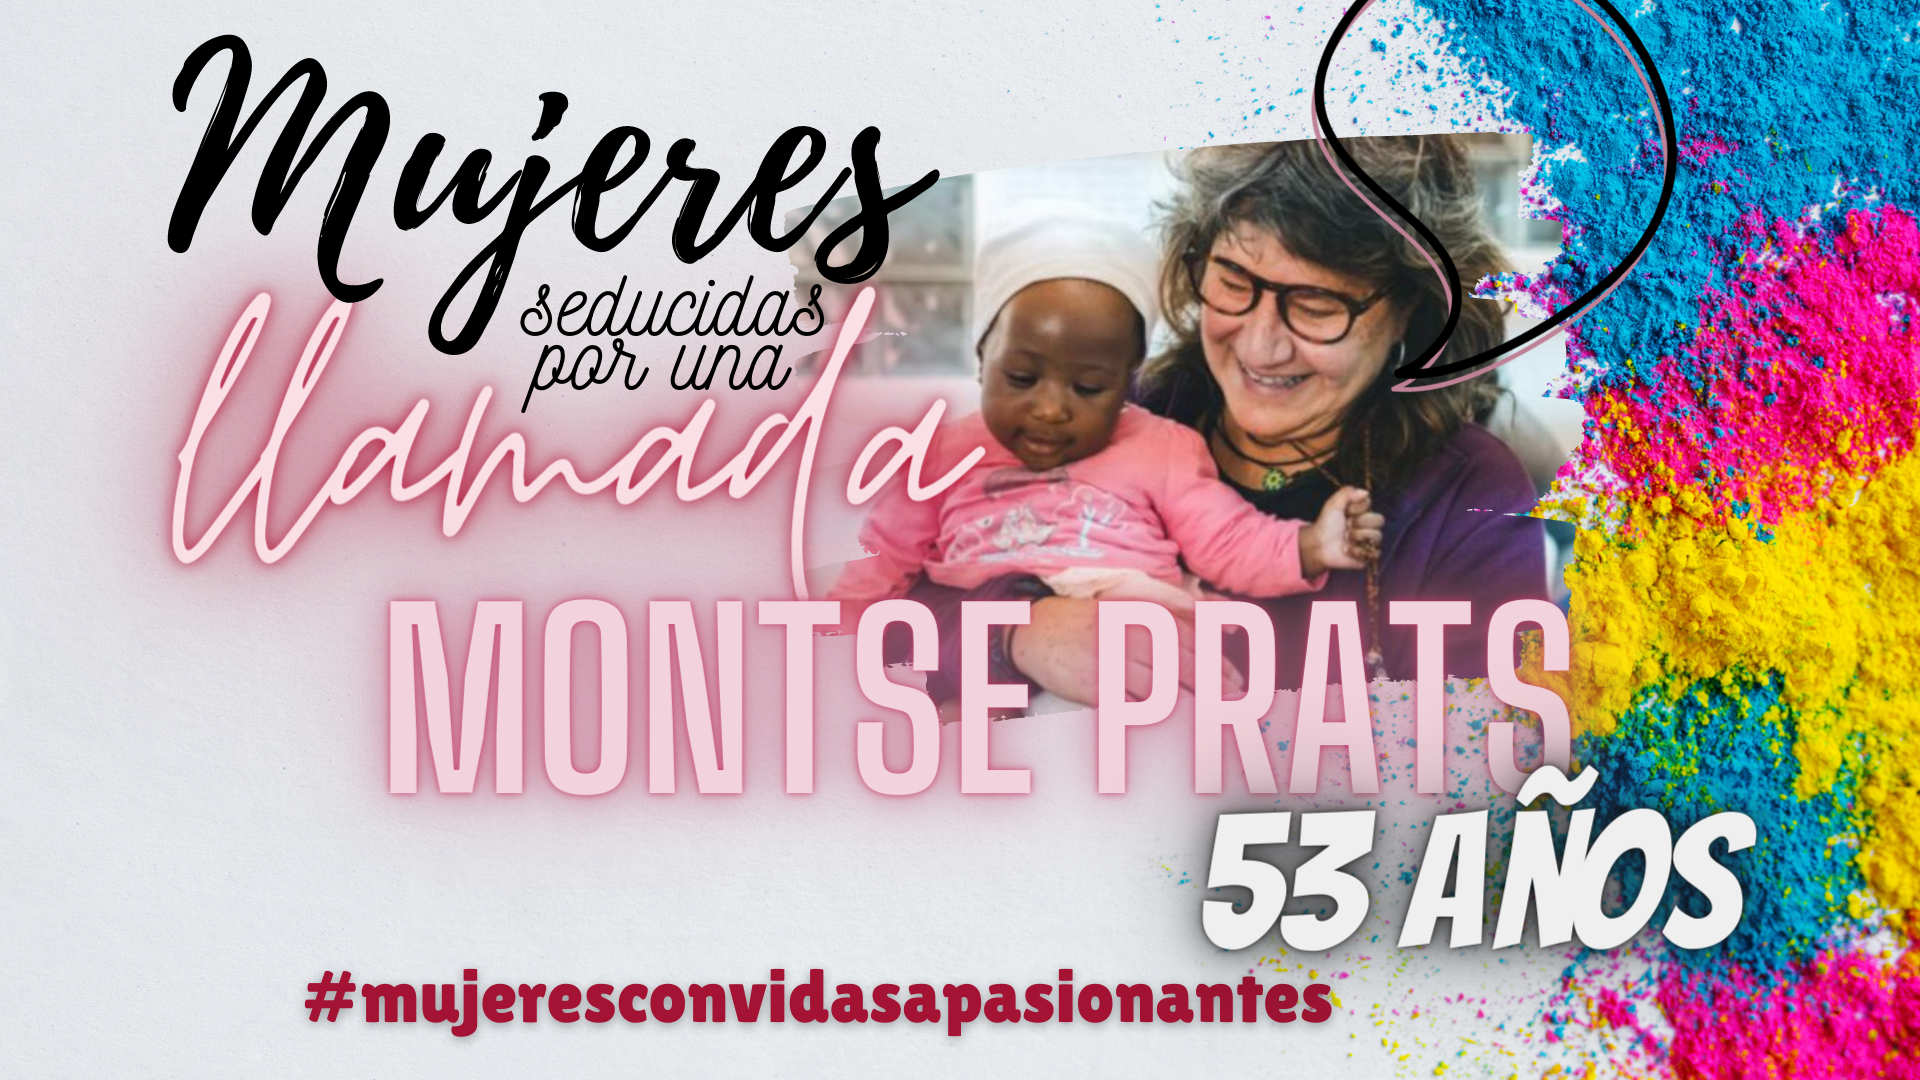 Mujeres con vidas apasionantes Montse Prats